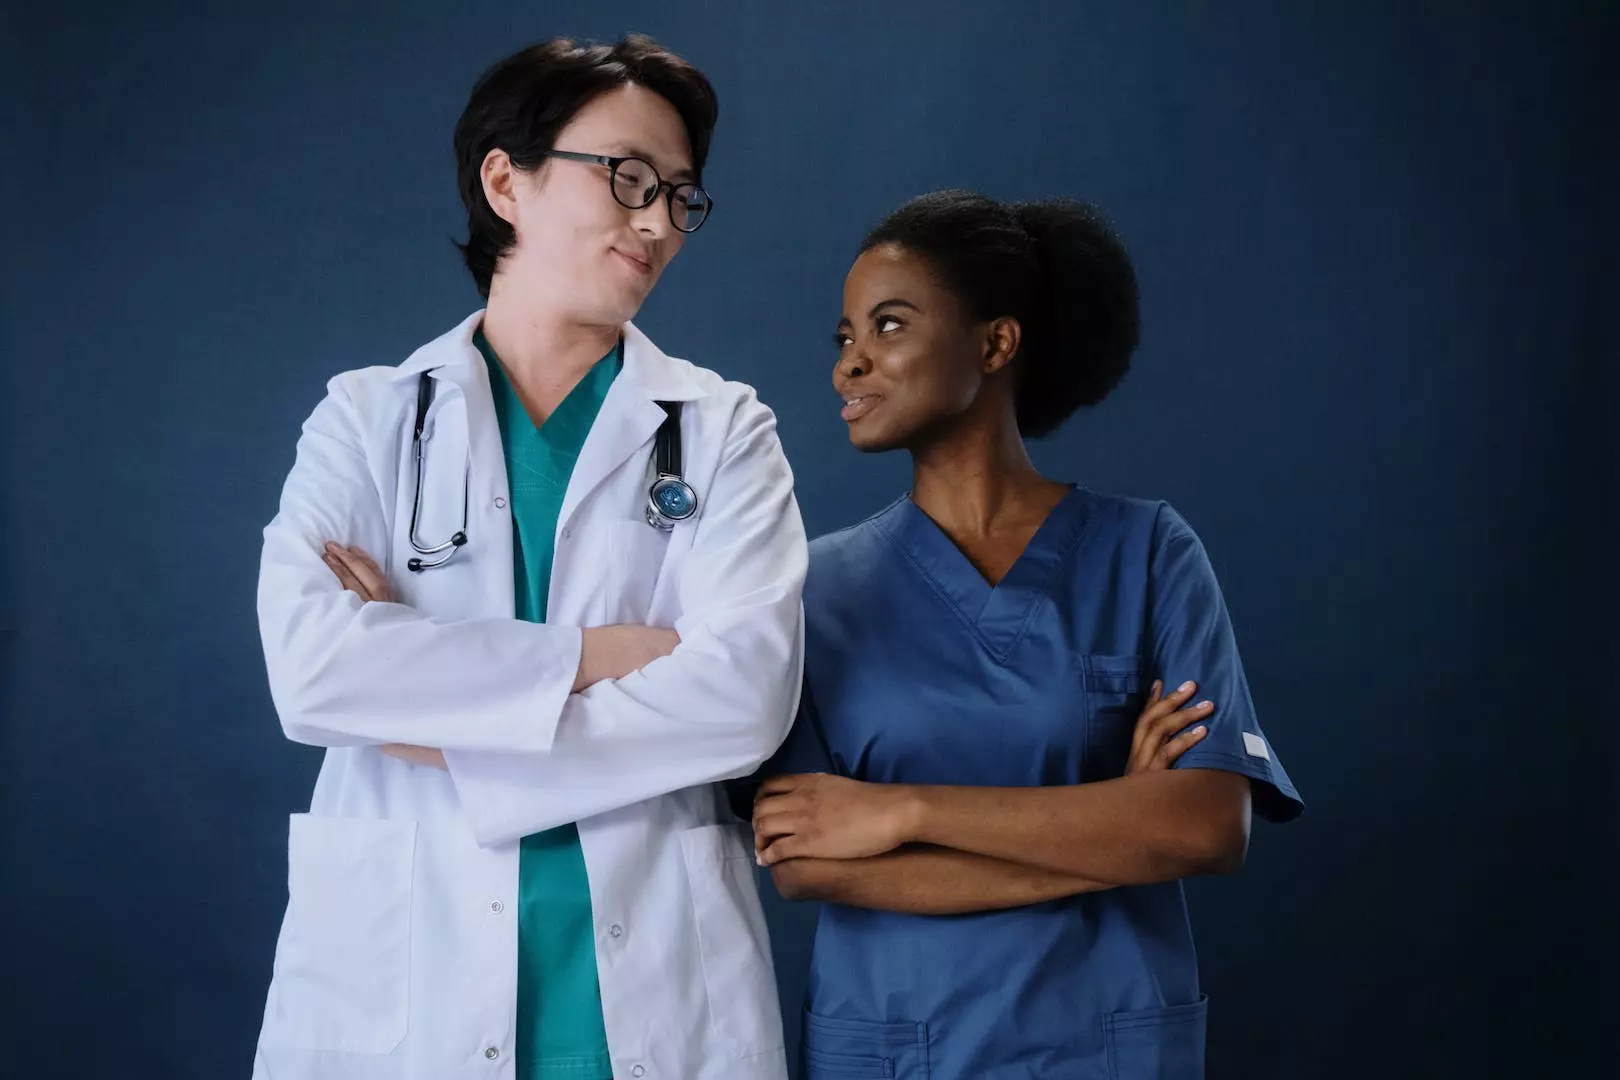 Ønsker du en karriere i sykepleie? - En guide til det moderne sykepleieyrket og hvordan du får din første sykepleie jobb